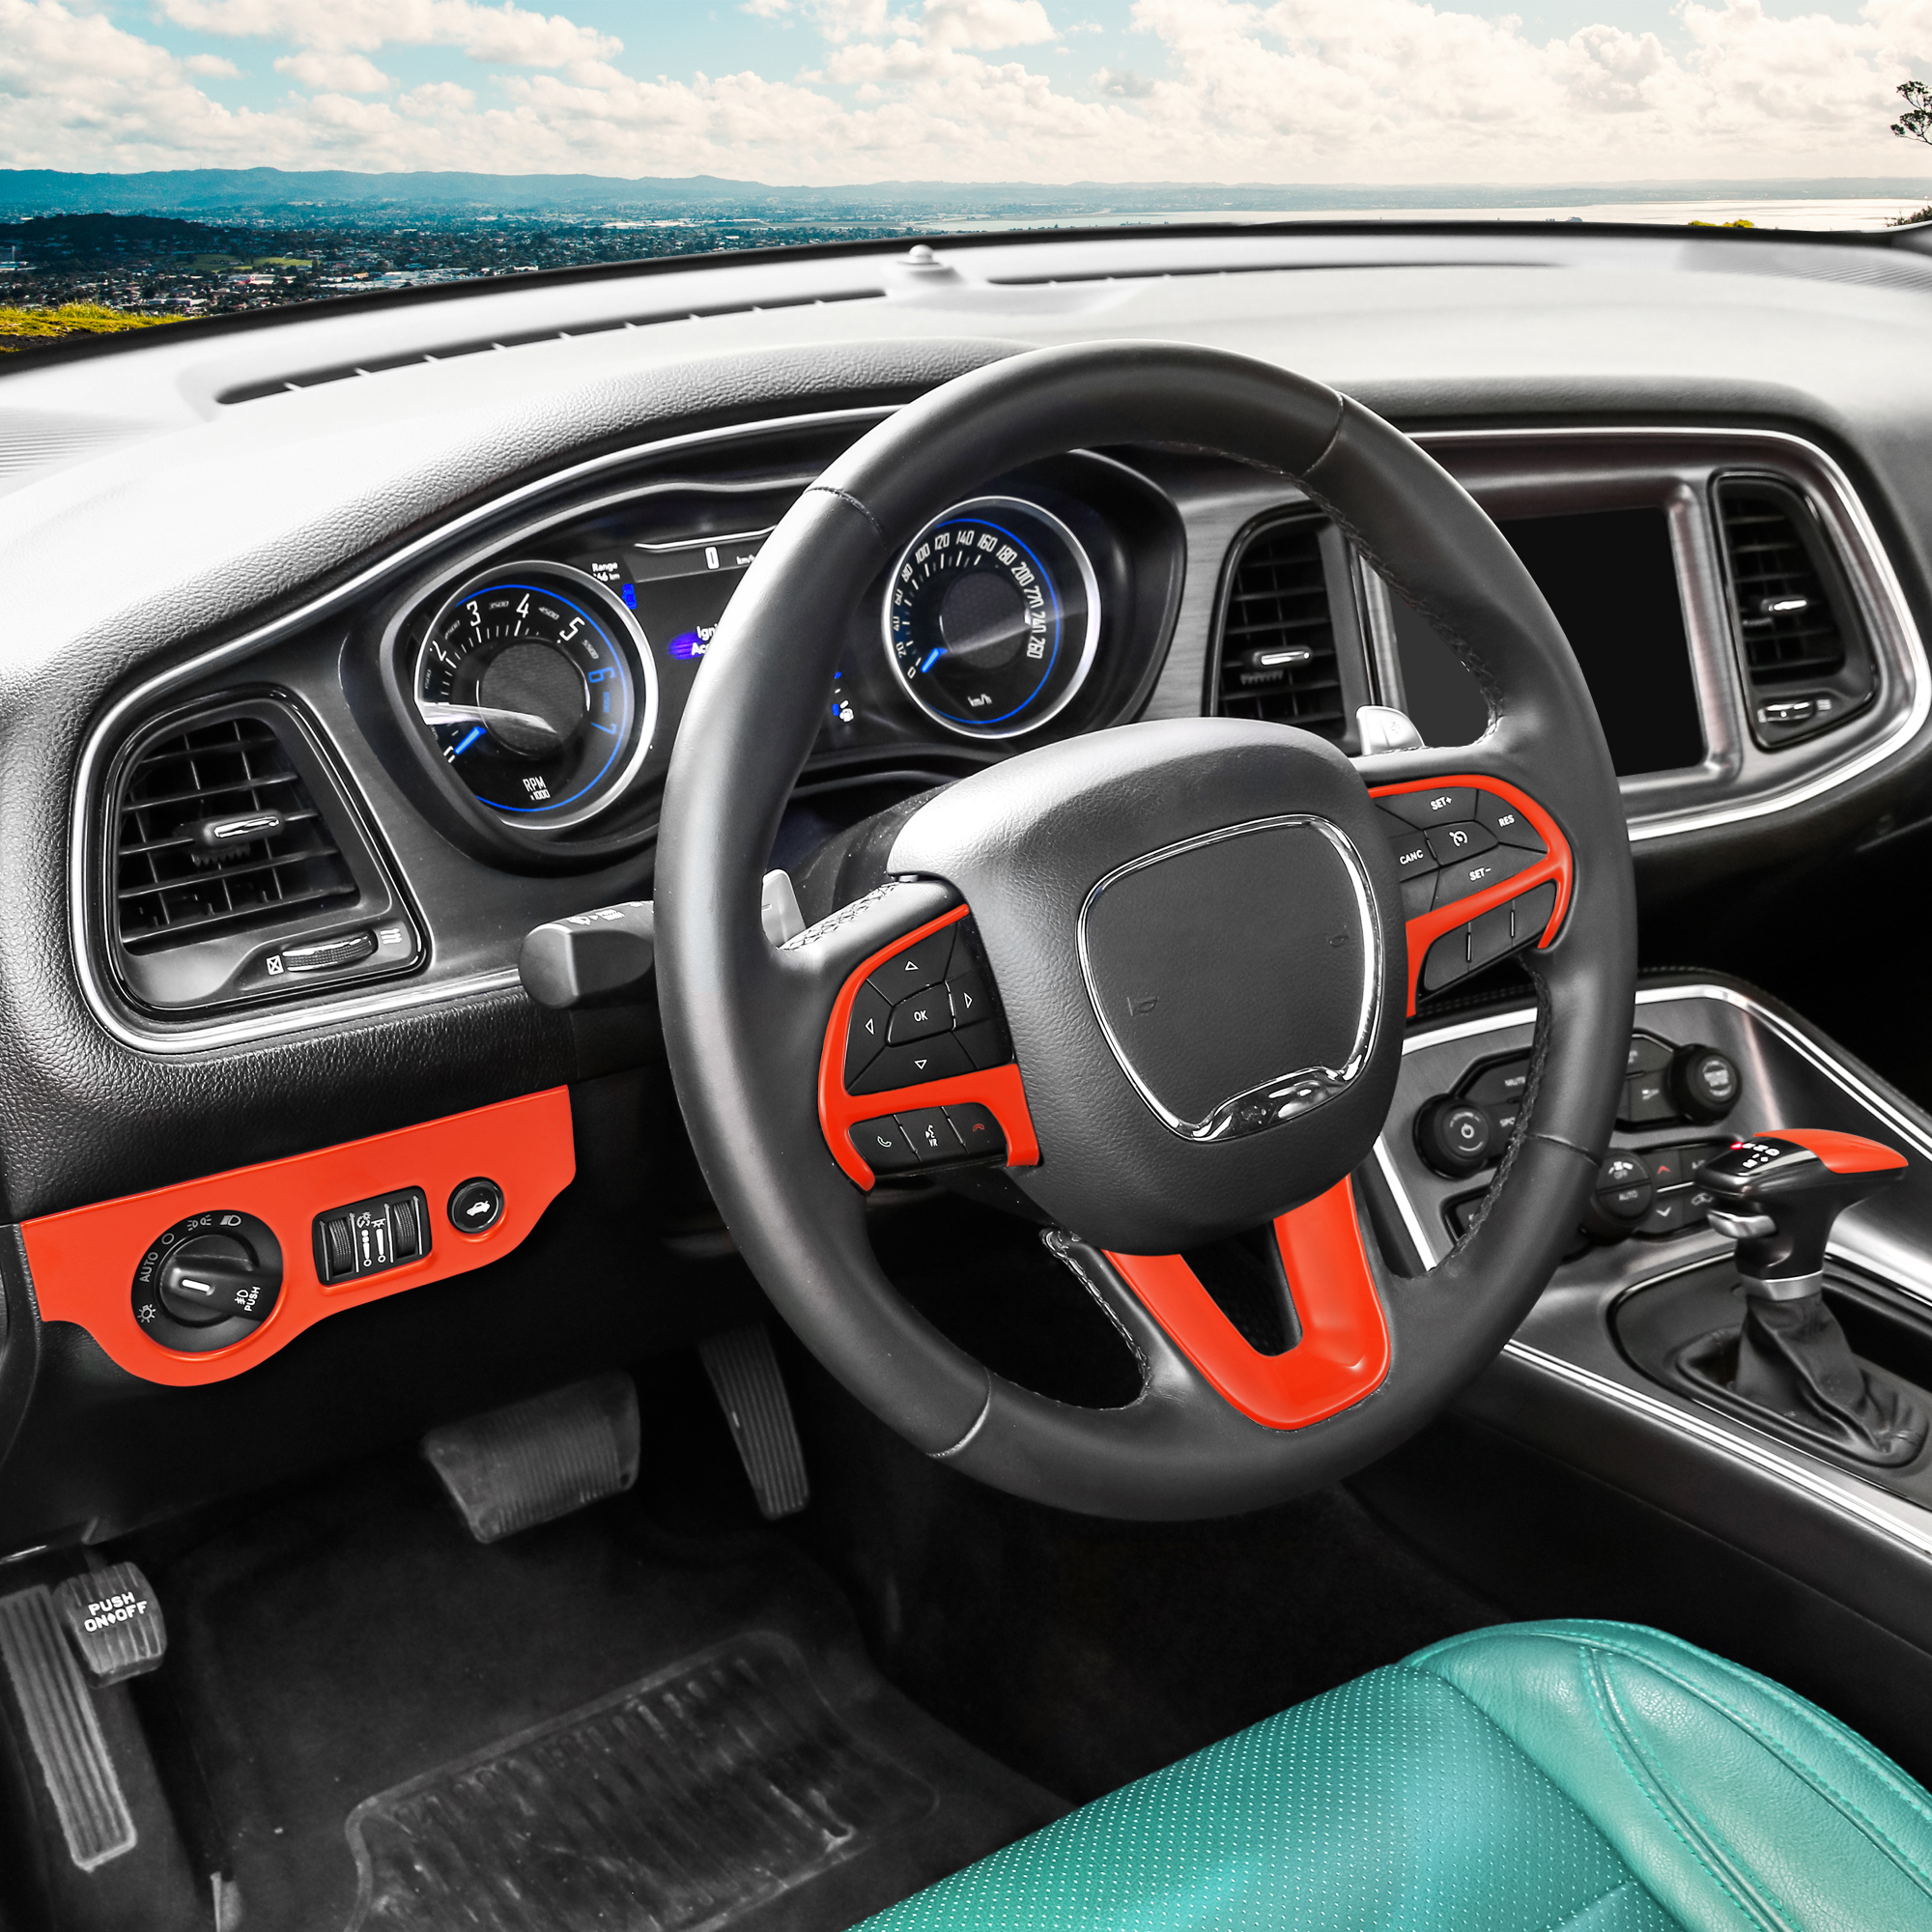 Unique Bargains 1 Set Steering Wheel Decoration for Dodge Charger Challenger 15-21 Orange